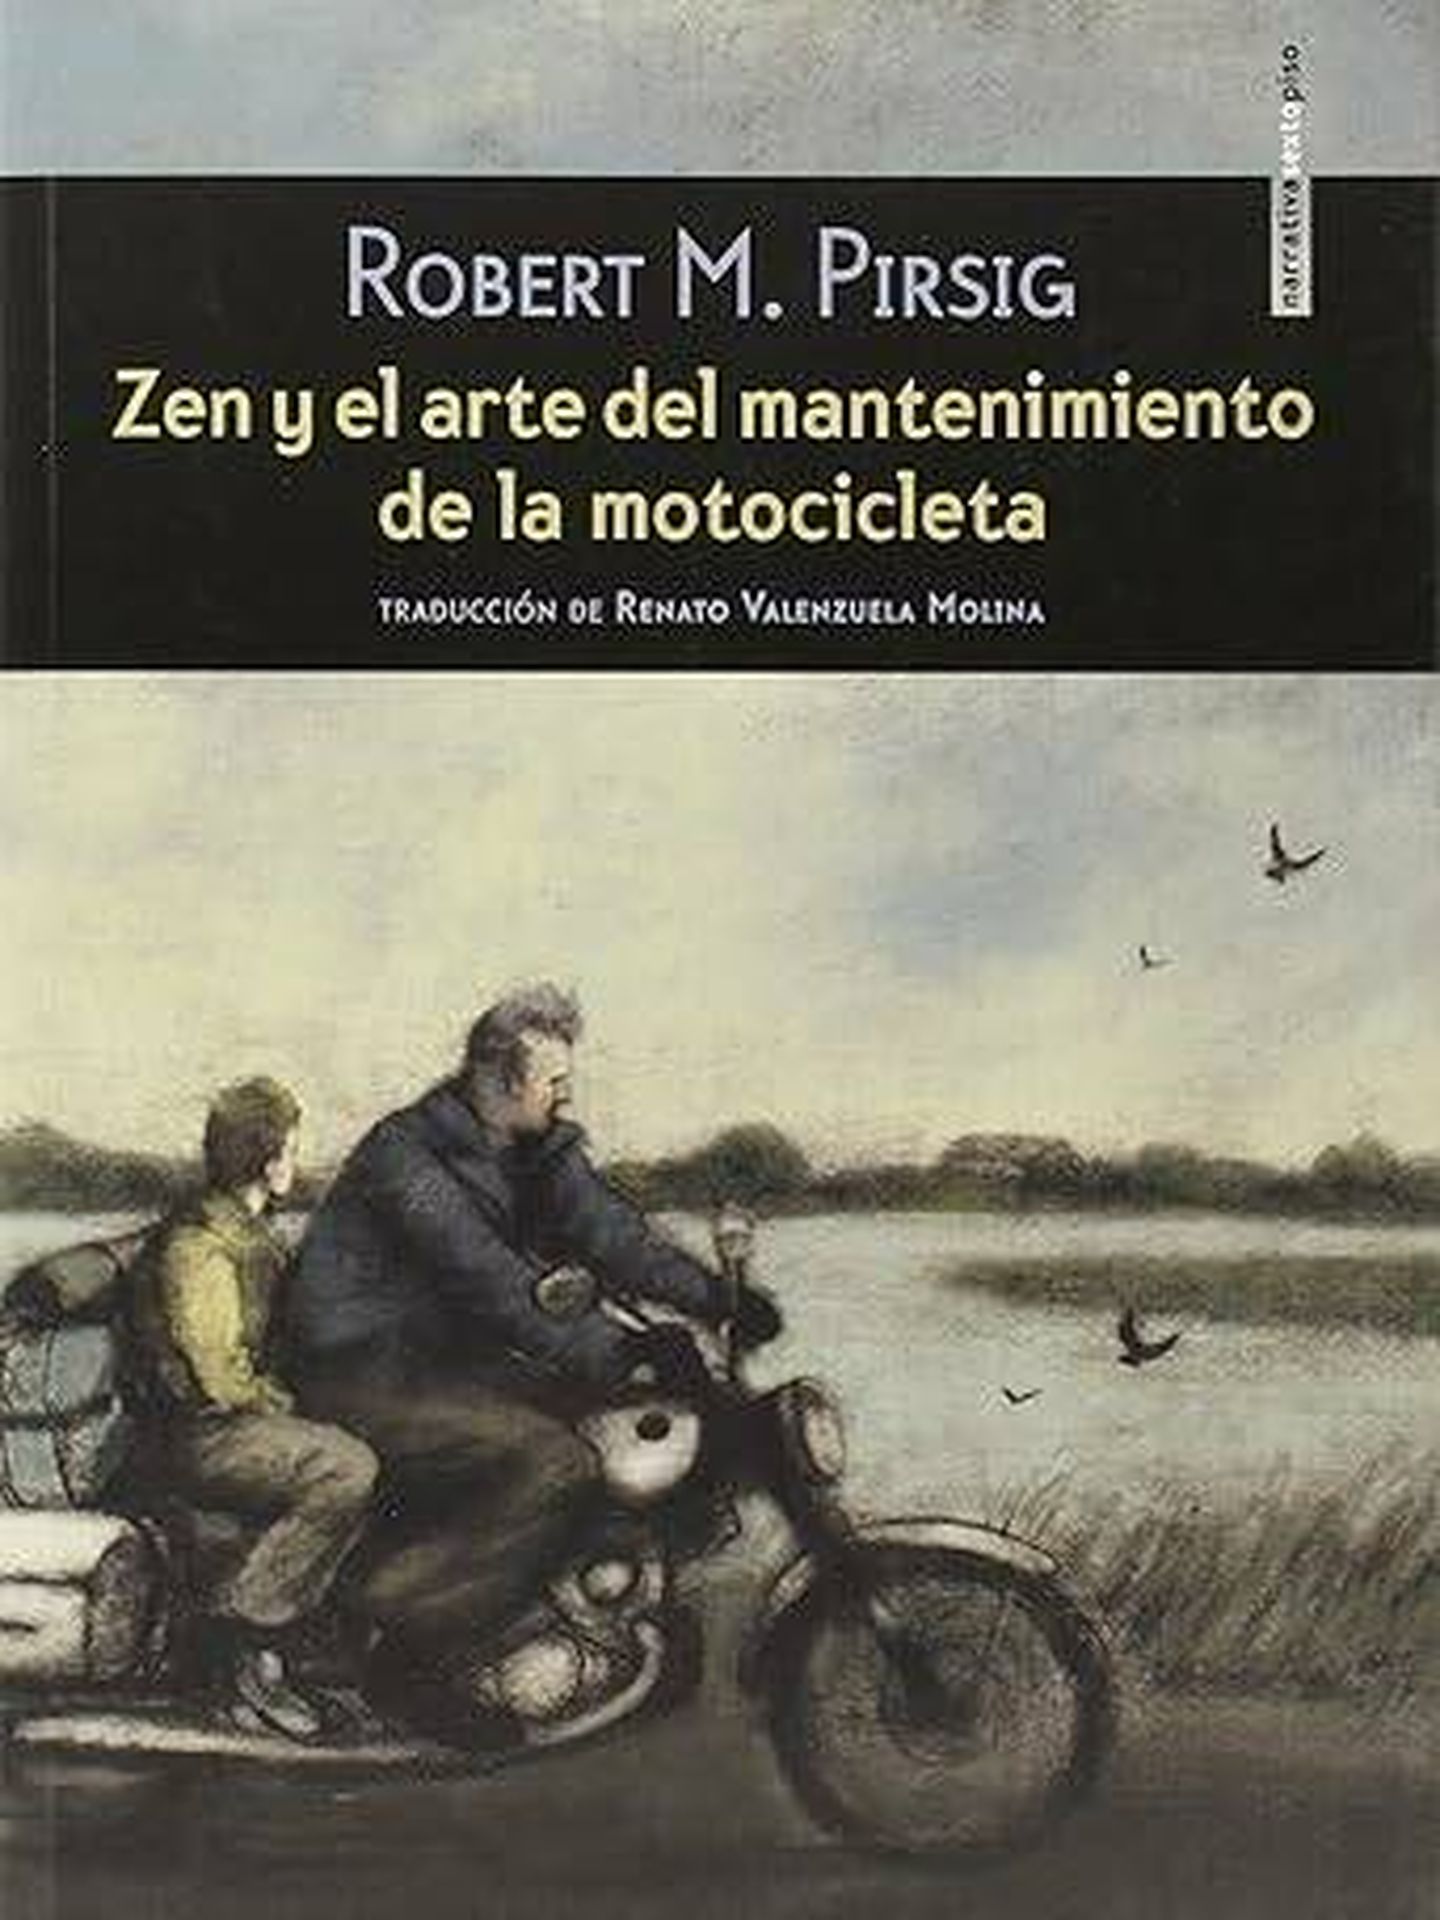 Portada de 'Zen y el arte del mantenimiento de la motocicleta', de Robert Pirsig. 